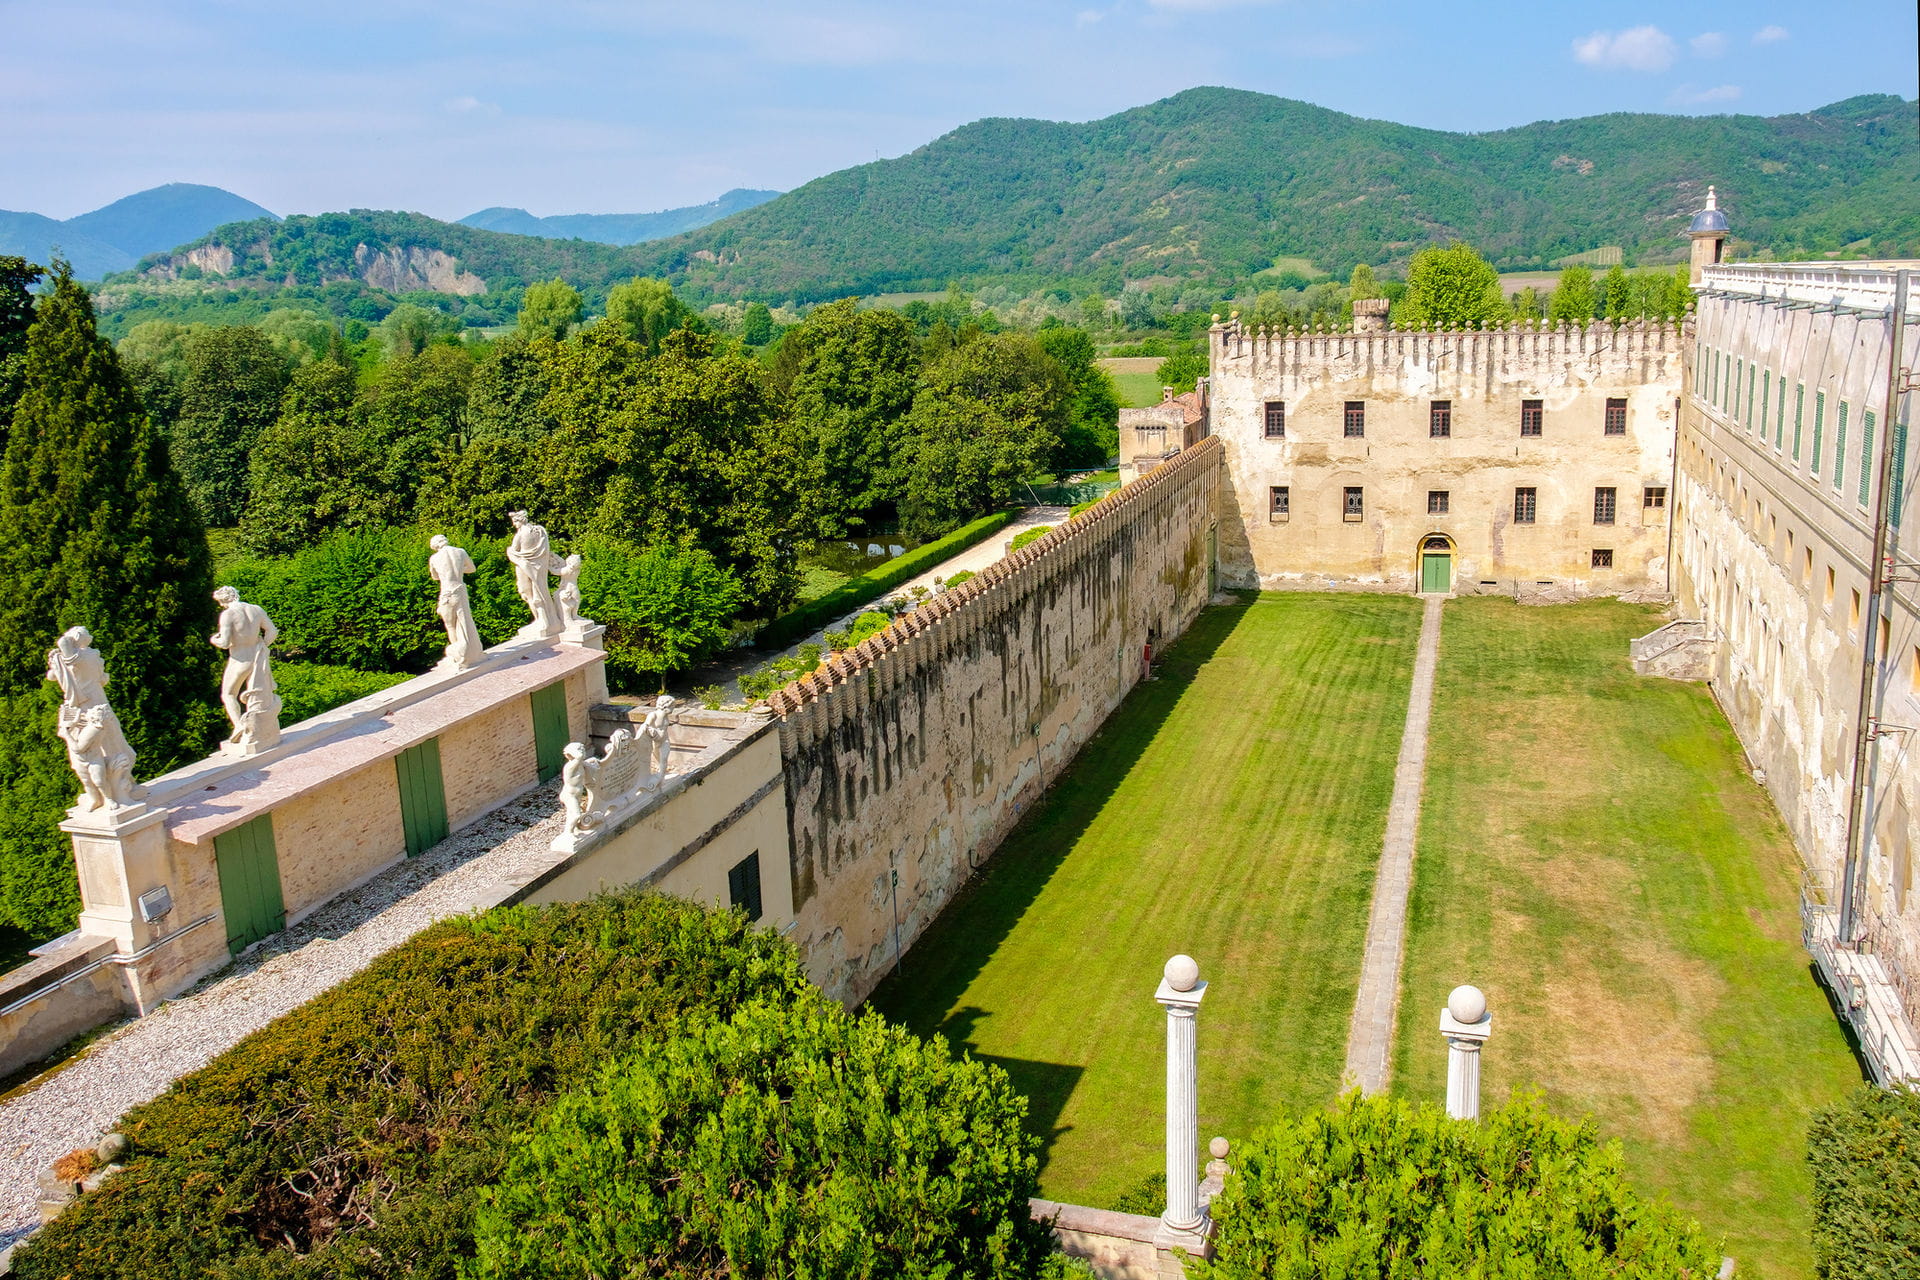 High quality hoto of Castello del Catajo - Italy